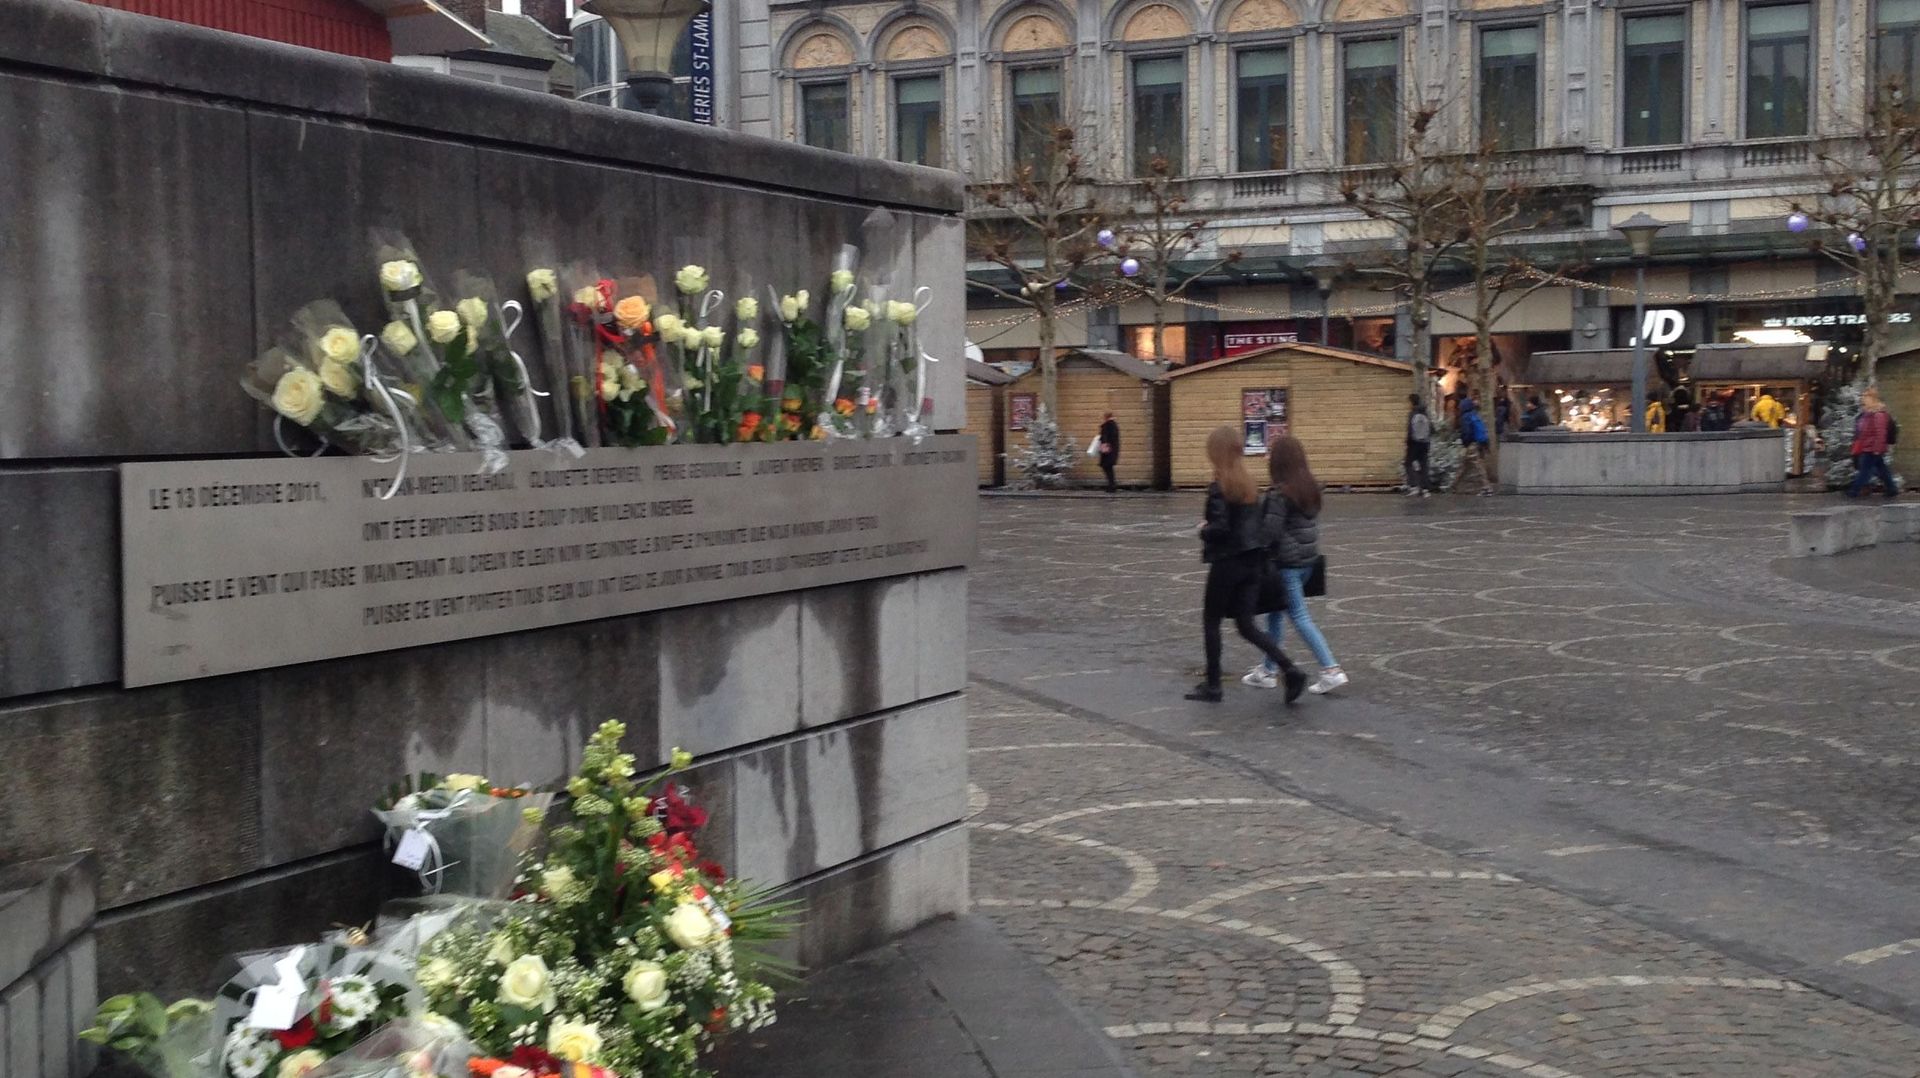 Un hommage a été rendu aux victimes de la tuerie à Liège du 13 décembre 2011